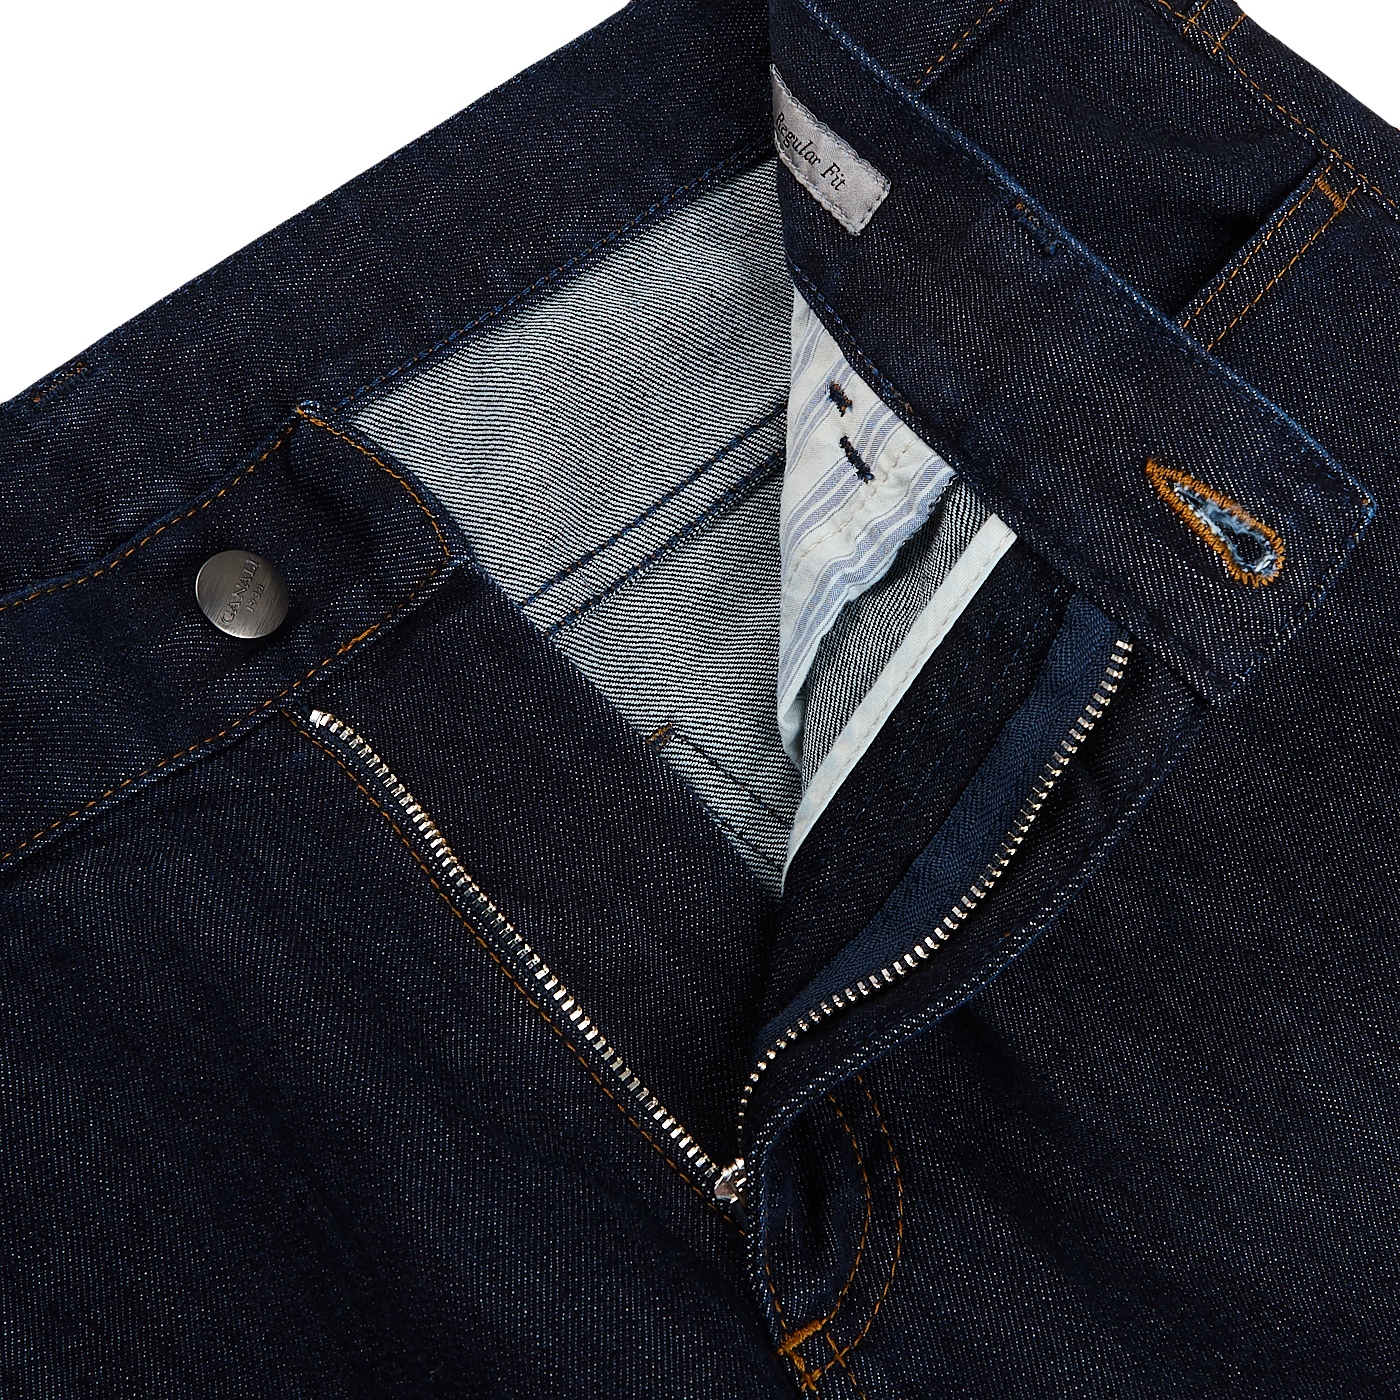 Canali Dark Indigo Cotton Stretch Jeans Zipper